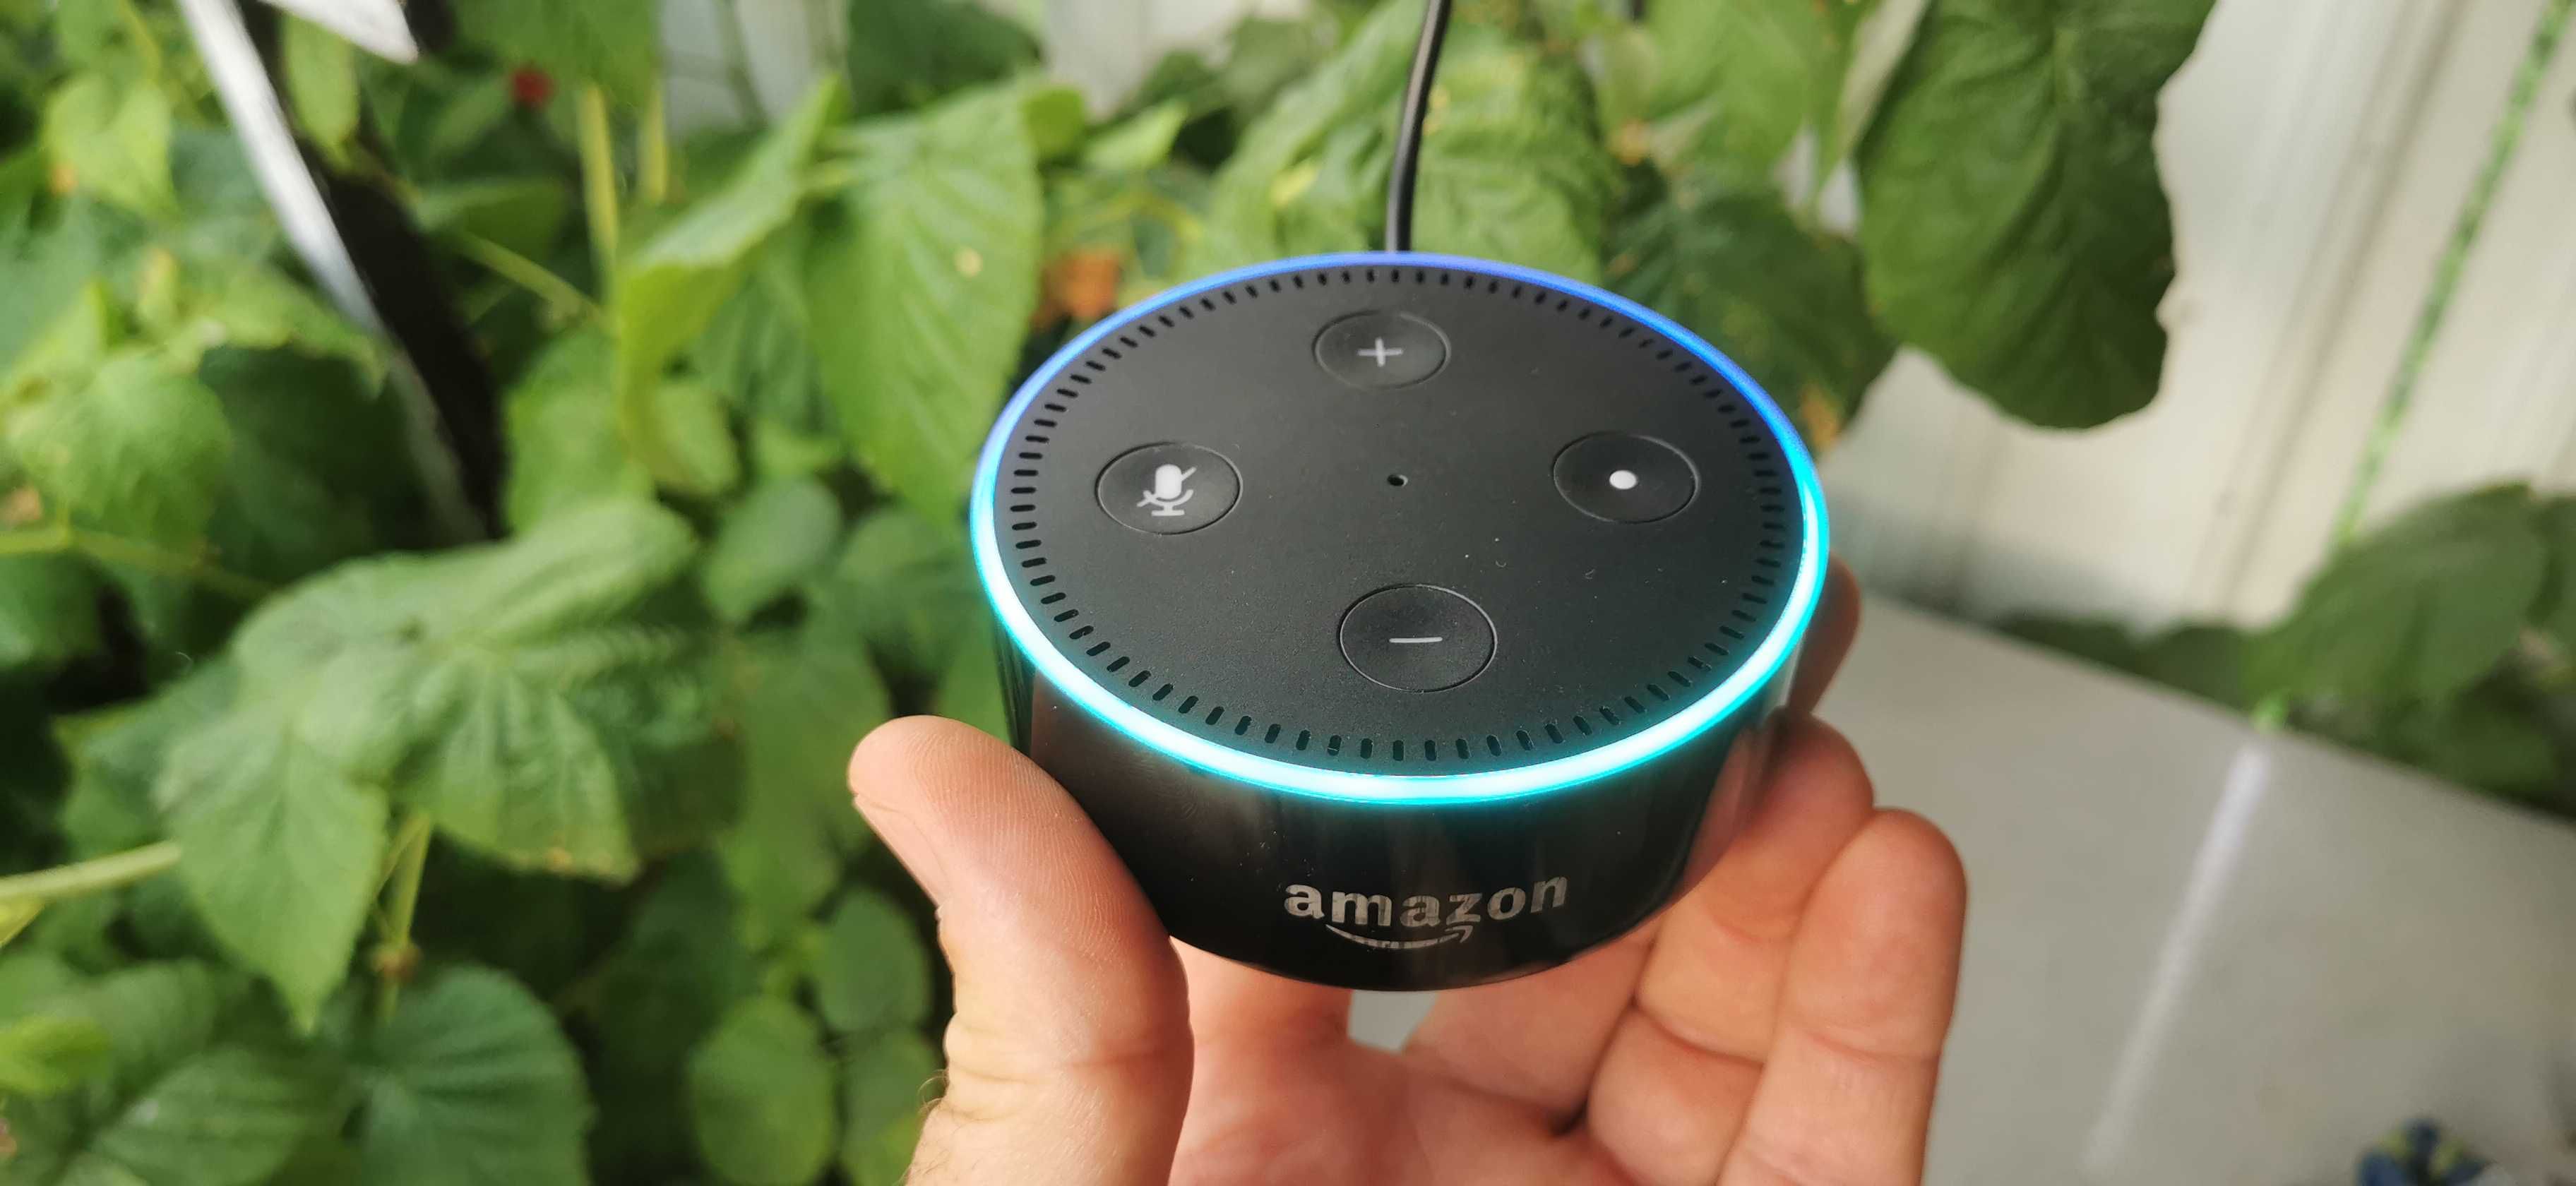 Boxa smart Alexa Echo Dot by Amazon